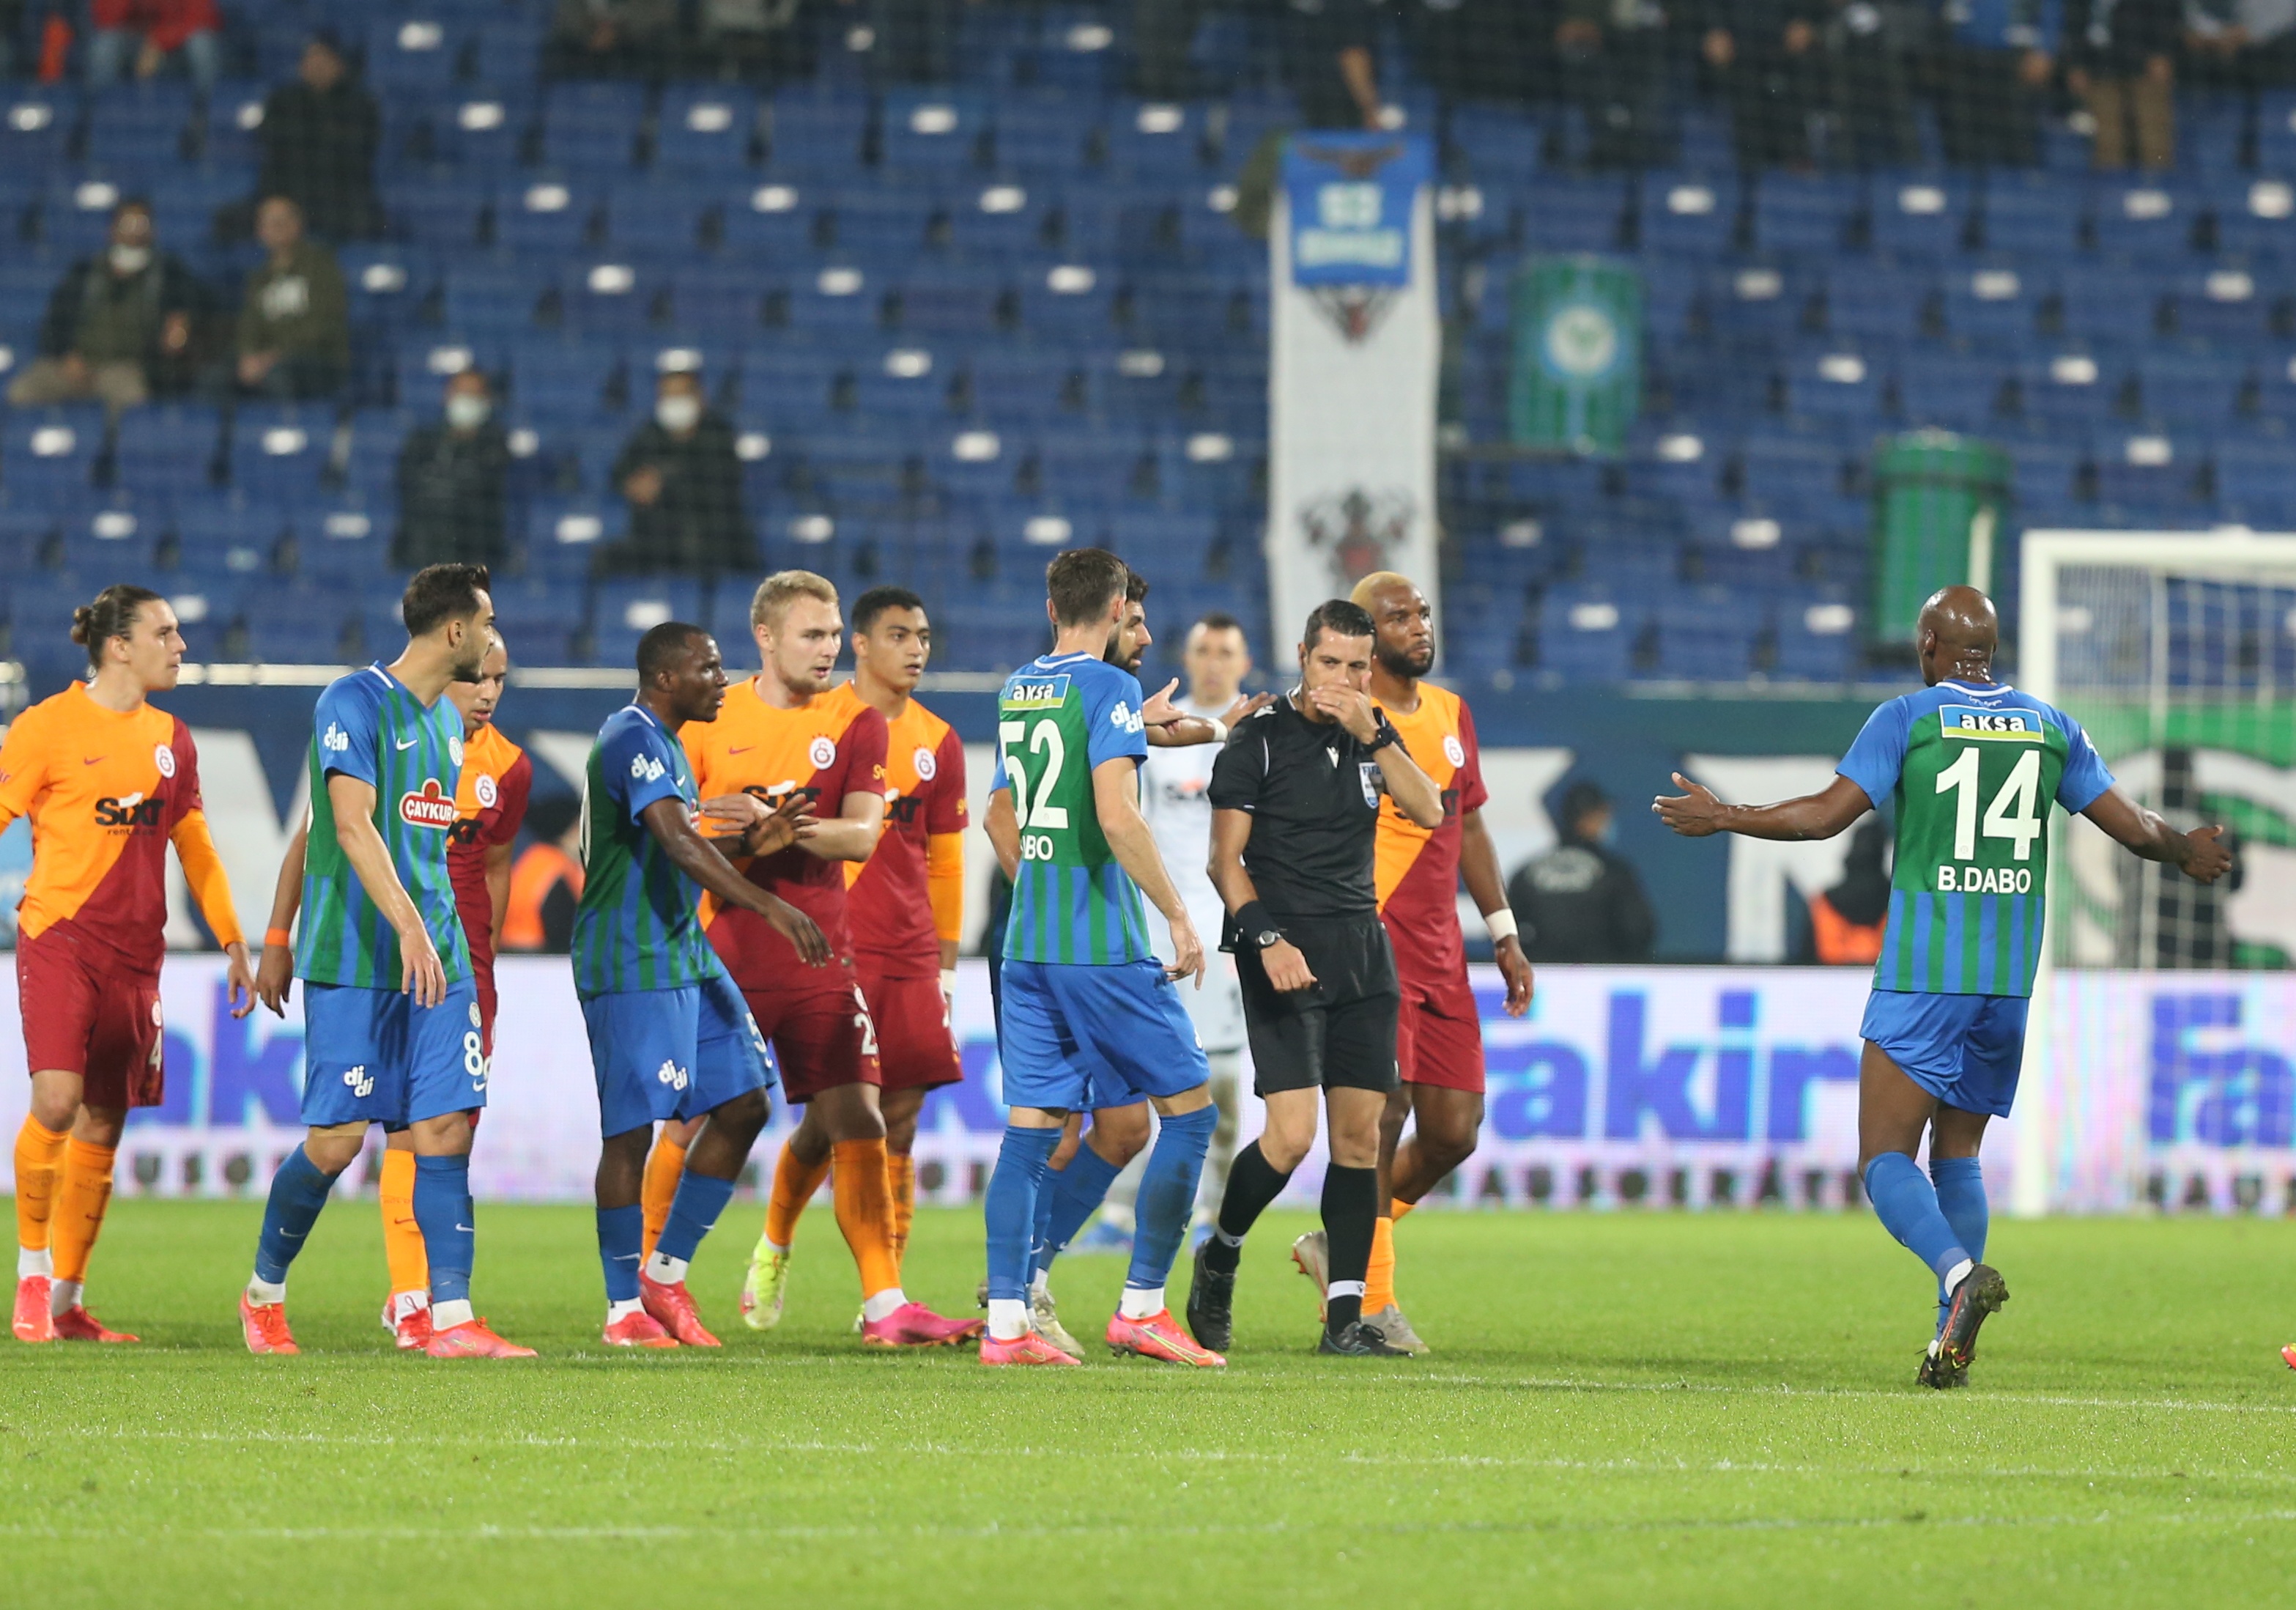 <p>Galatasaray bu skorla puanını 14 yaptı. Rizespor ise 1 puanda kaldı.</p>